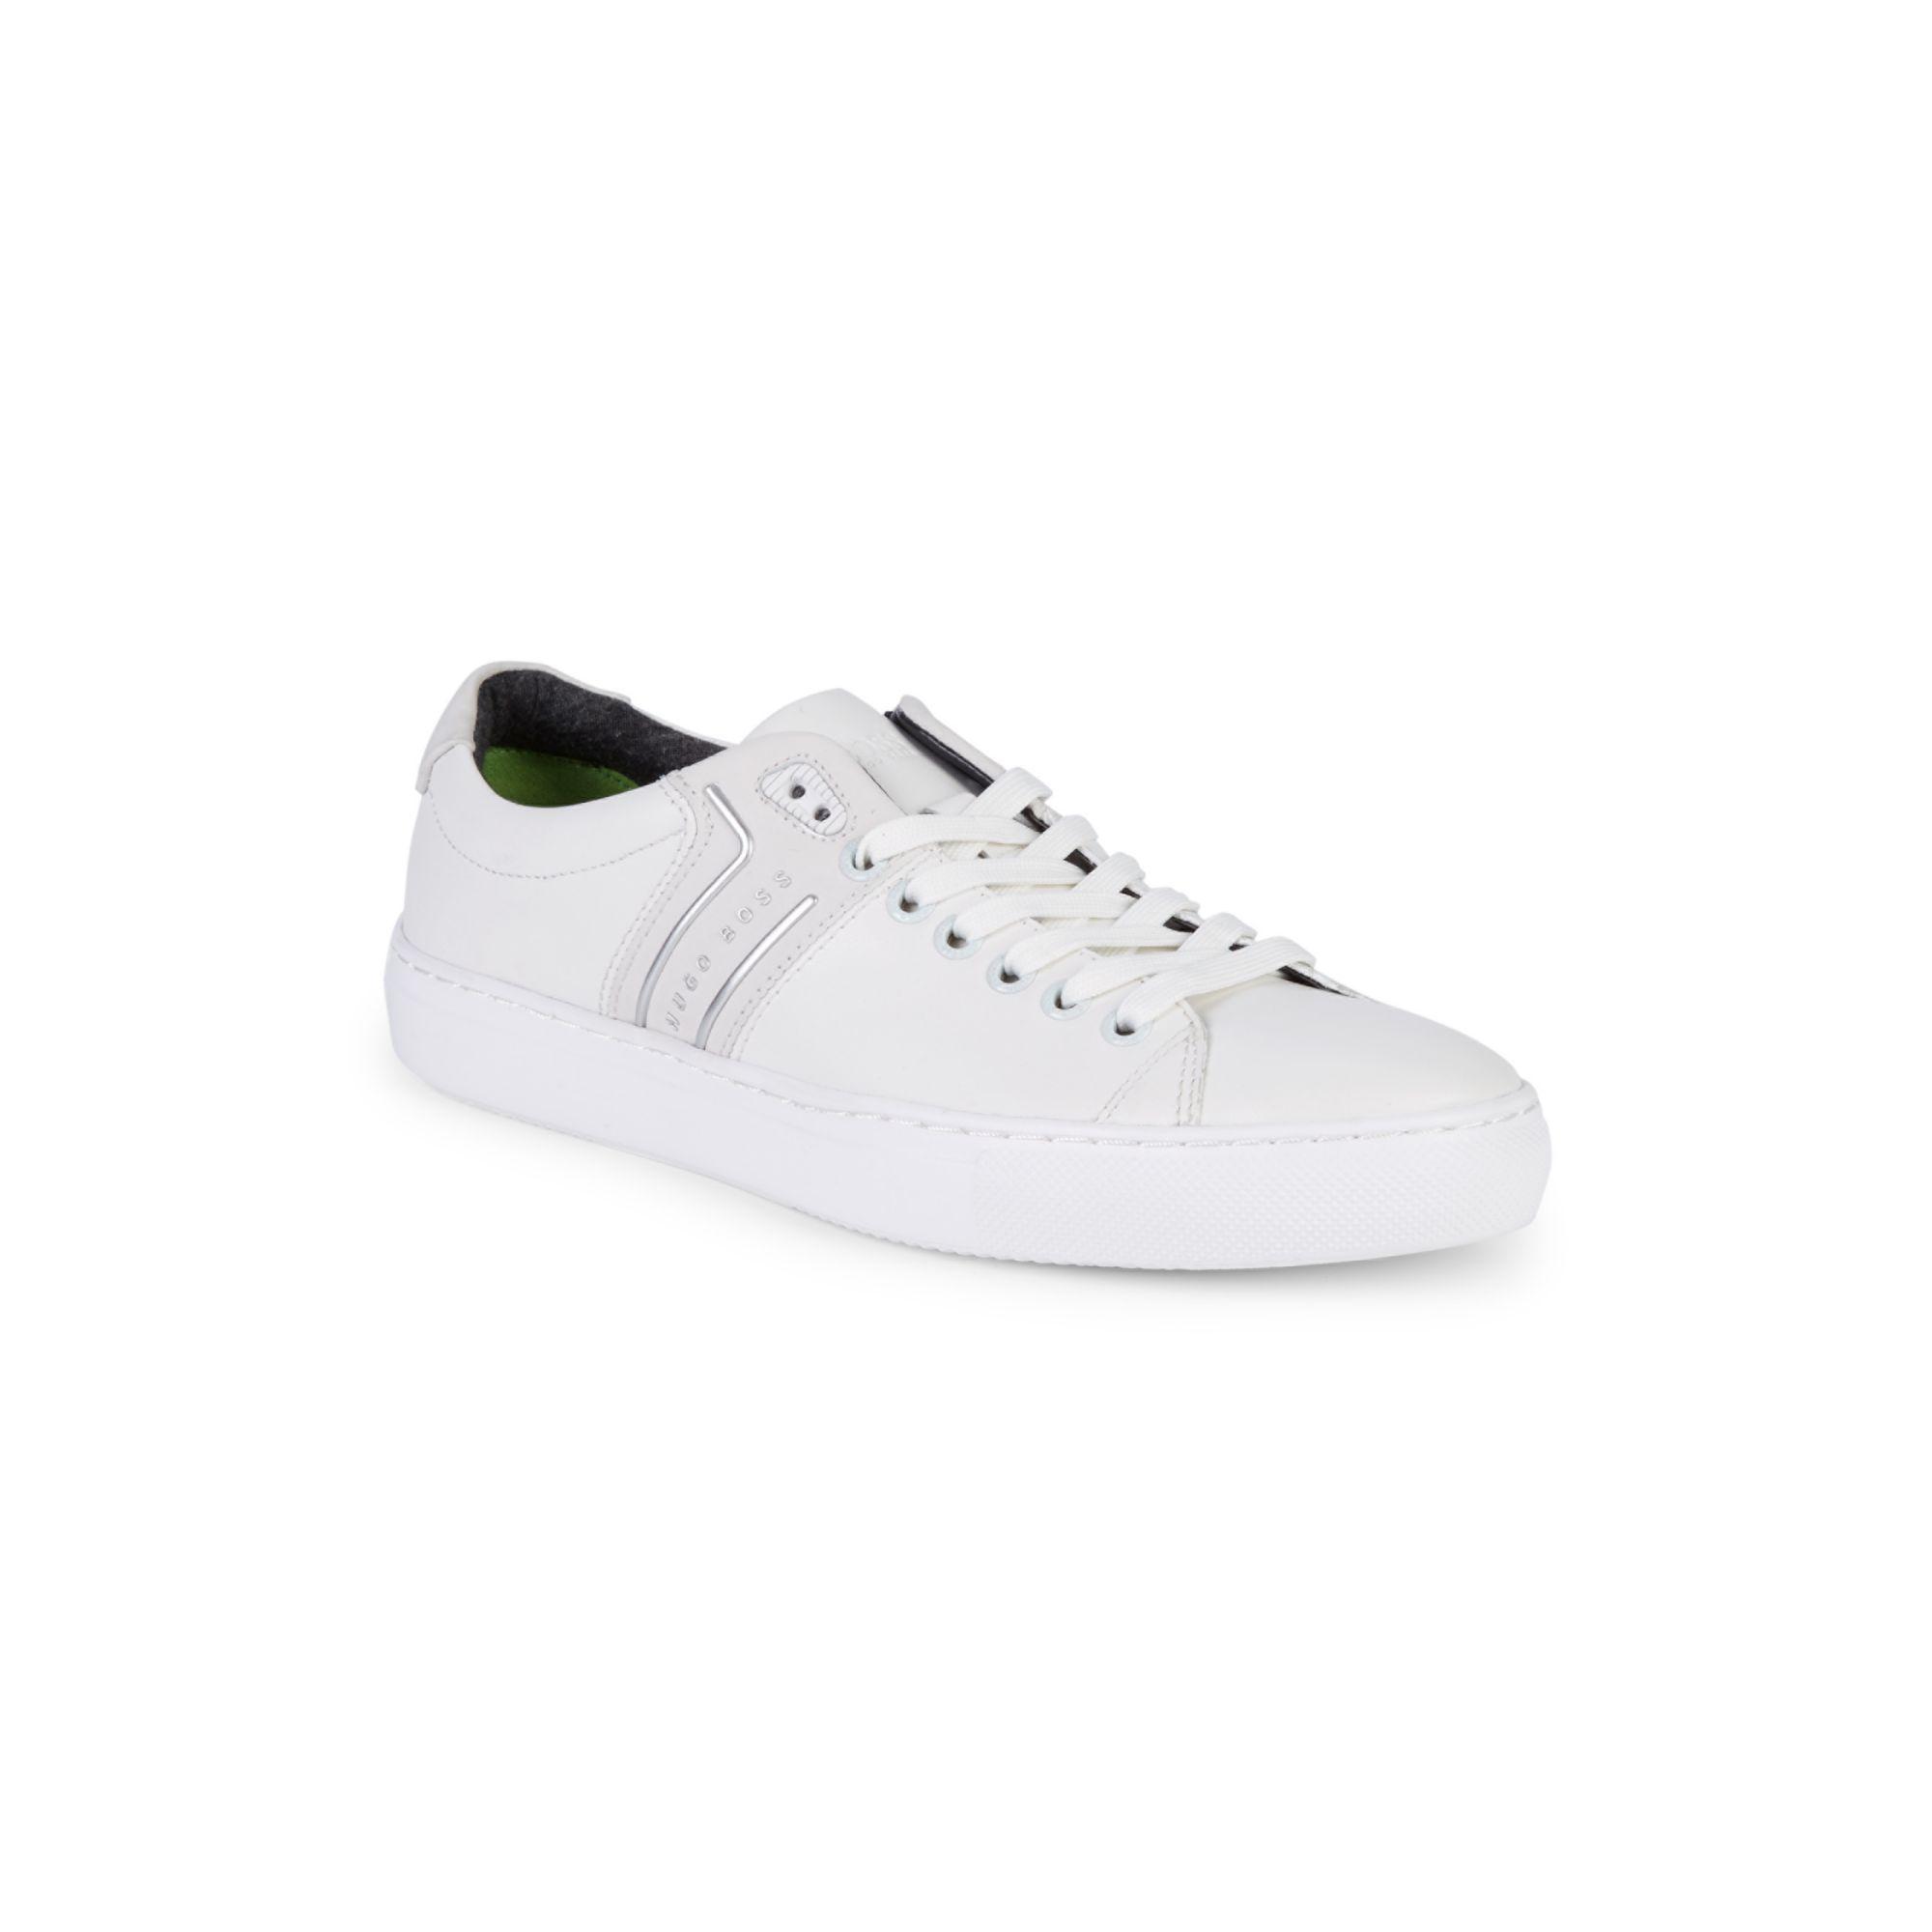 killing pengeoverførsel Nødvendig BOSS by HUGO BOSS Leather Enlight Tennis Sneakers in White for Men - Lyst